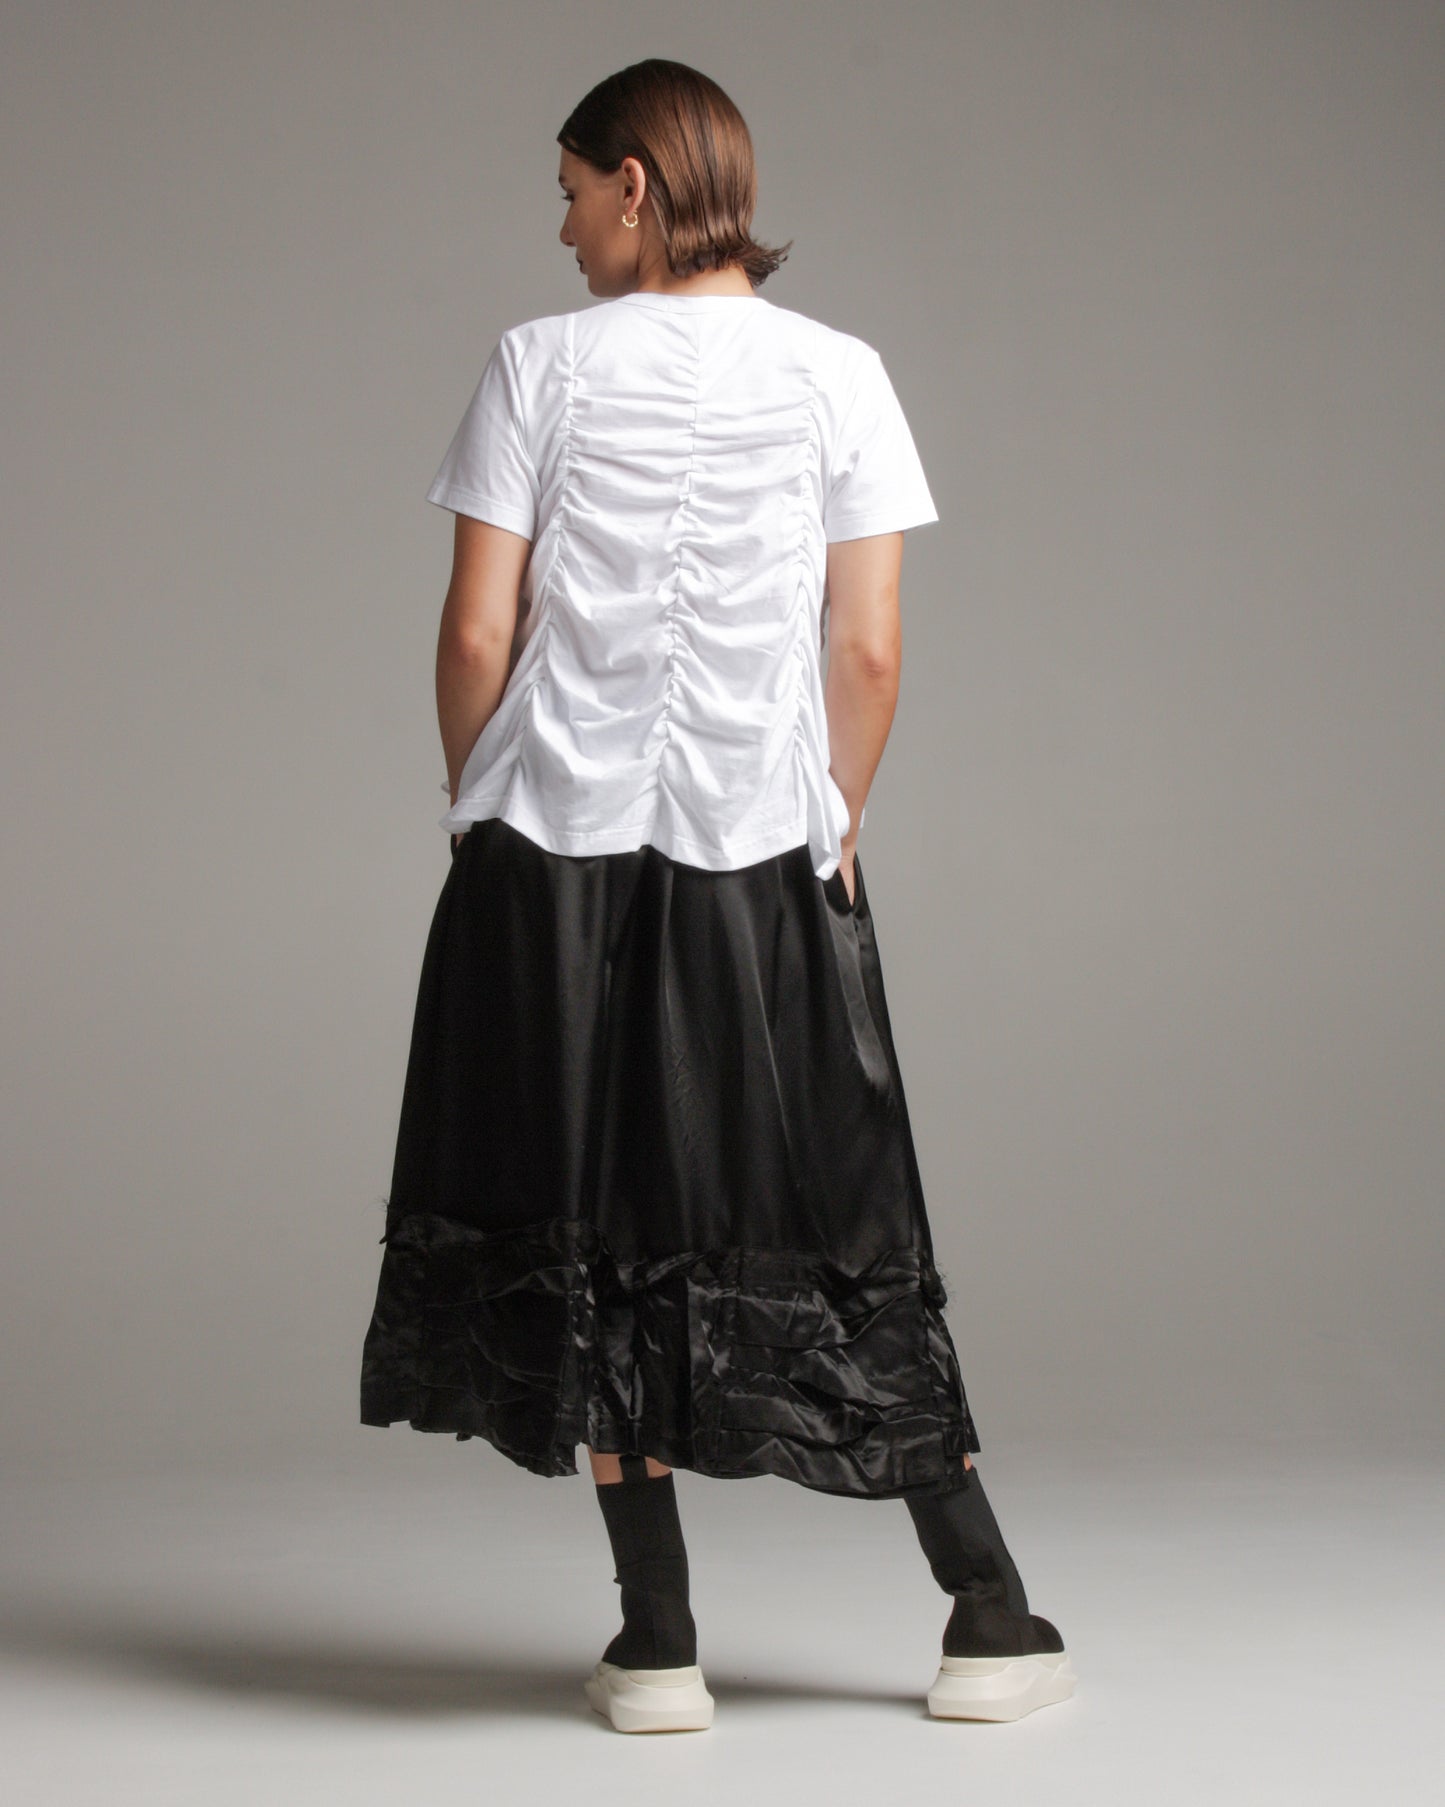 Shiny Detail Skirt